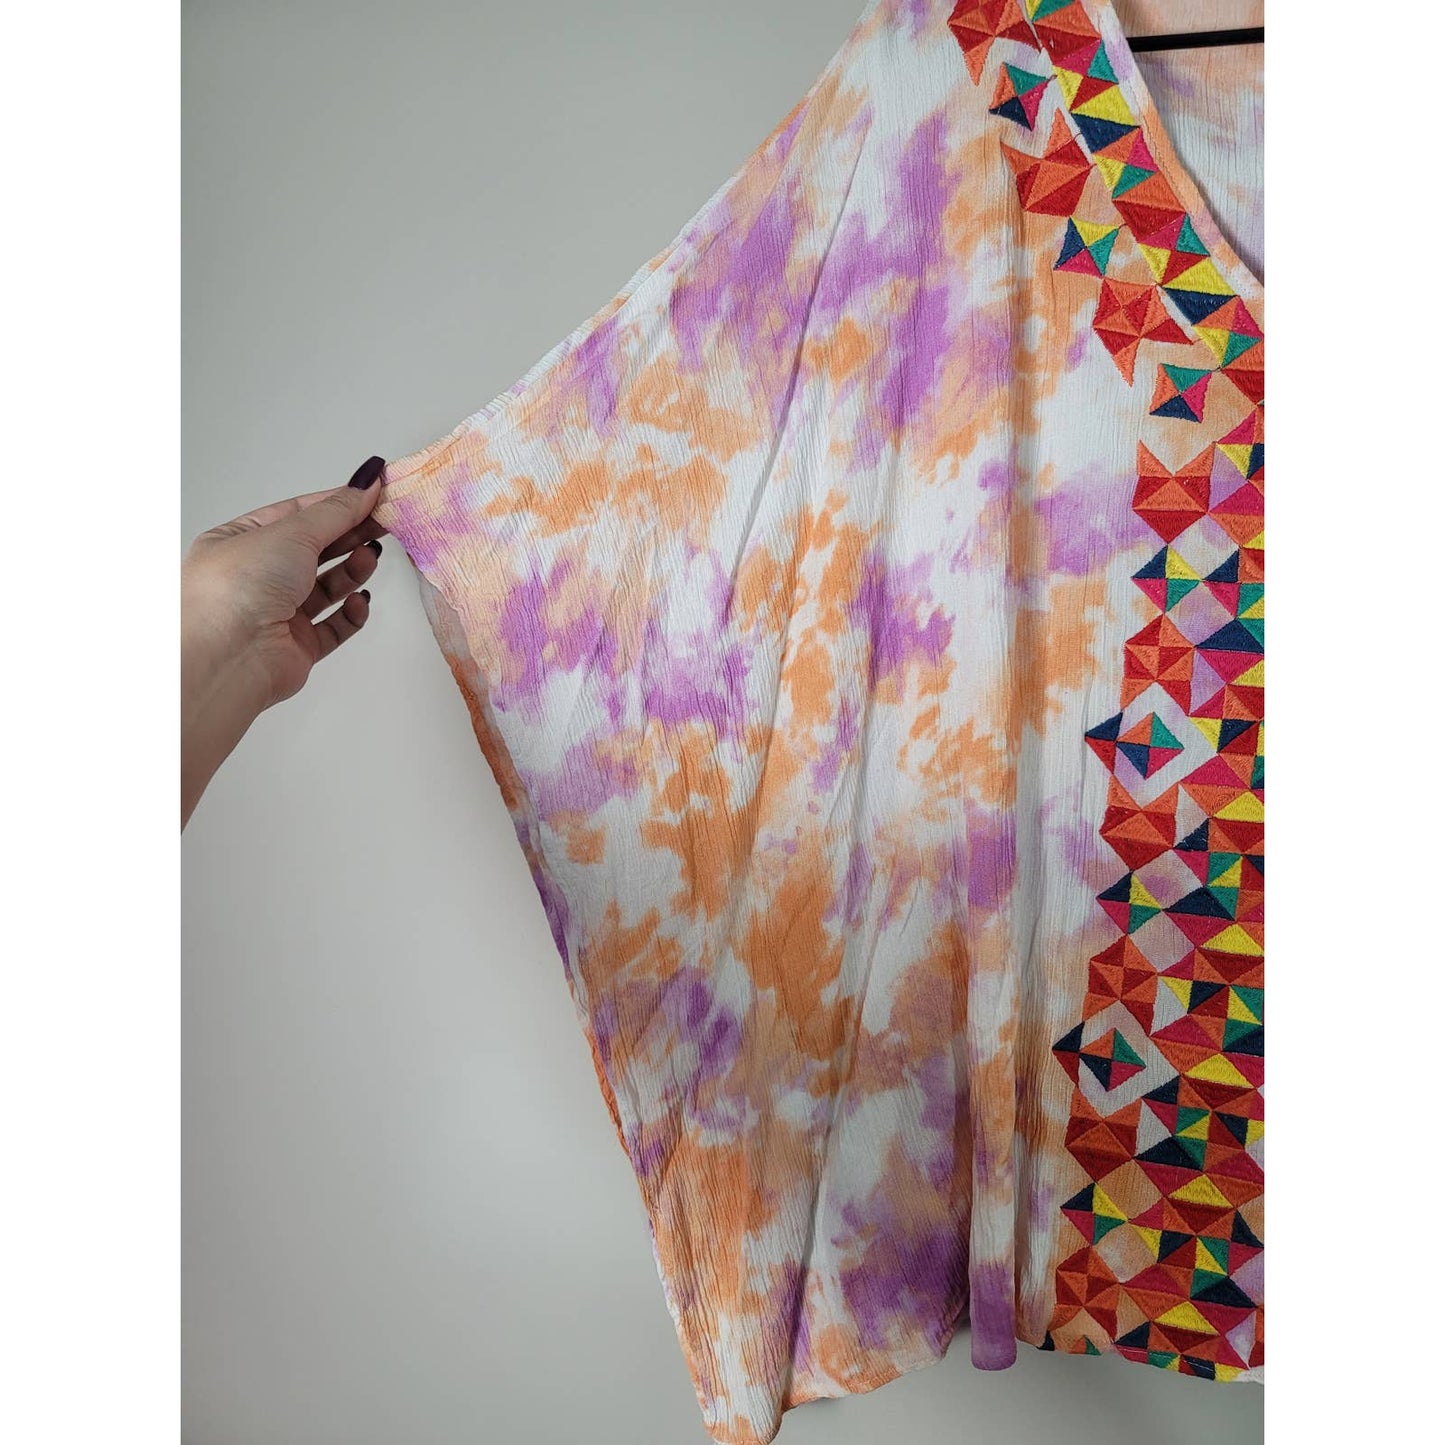 Savanna Jane Embroidered Caftan Tunic Top Tie Dye Flowy Boho Plus Size 1X/2X